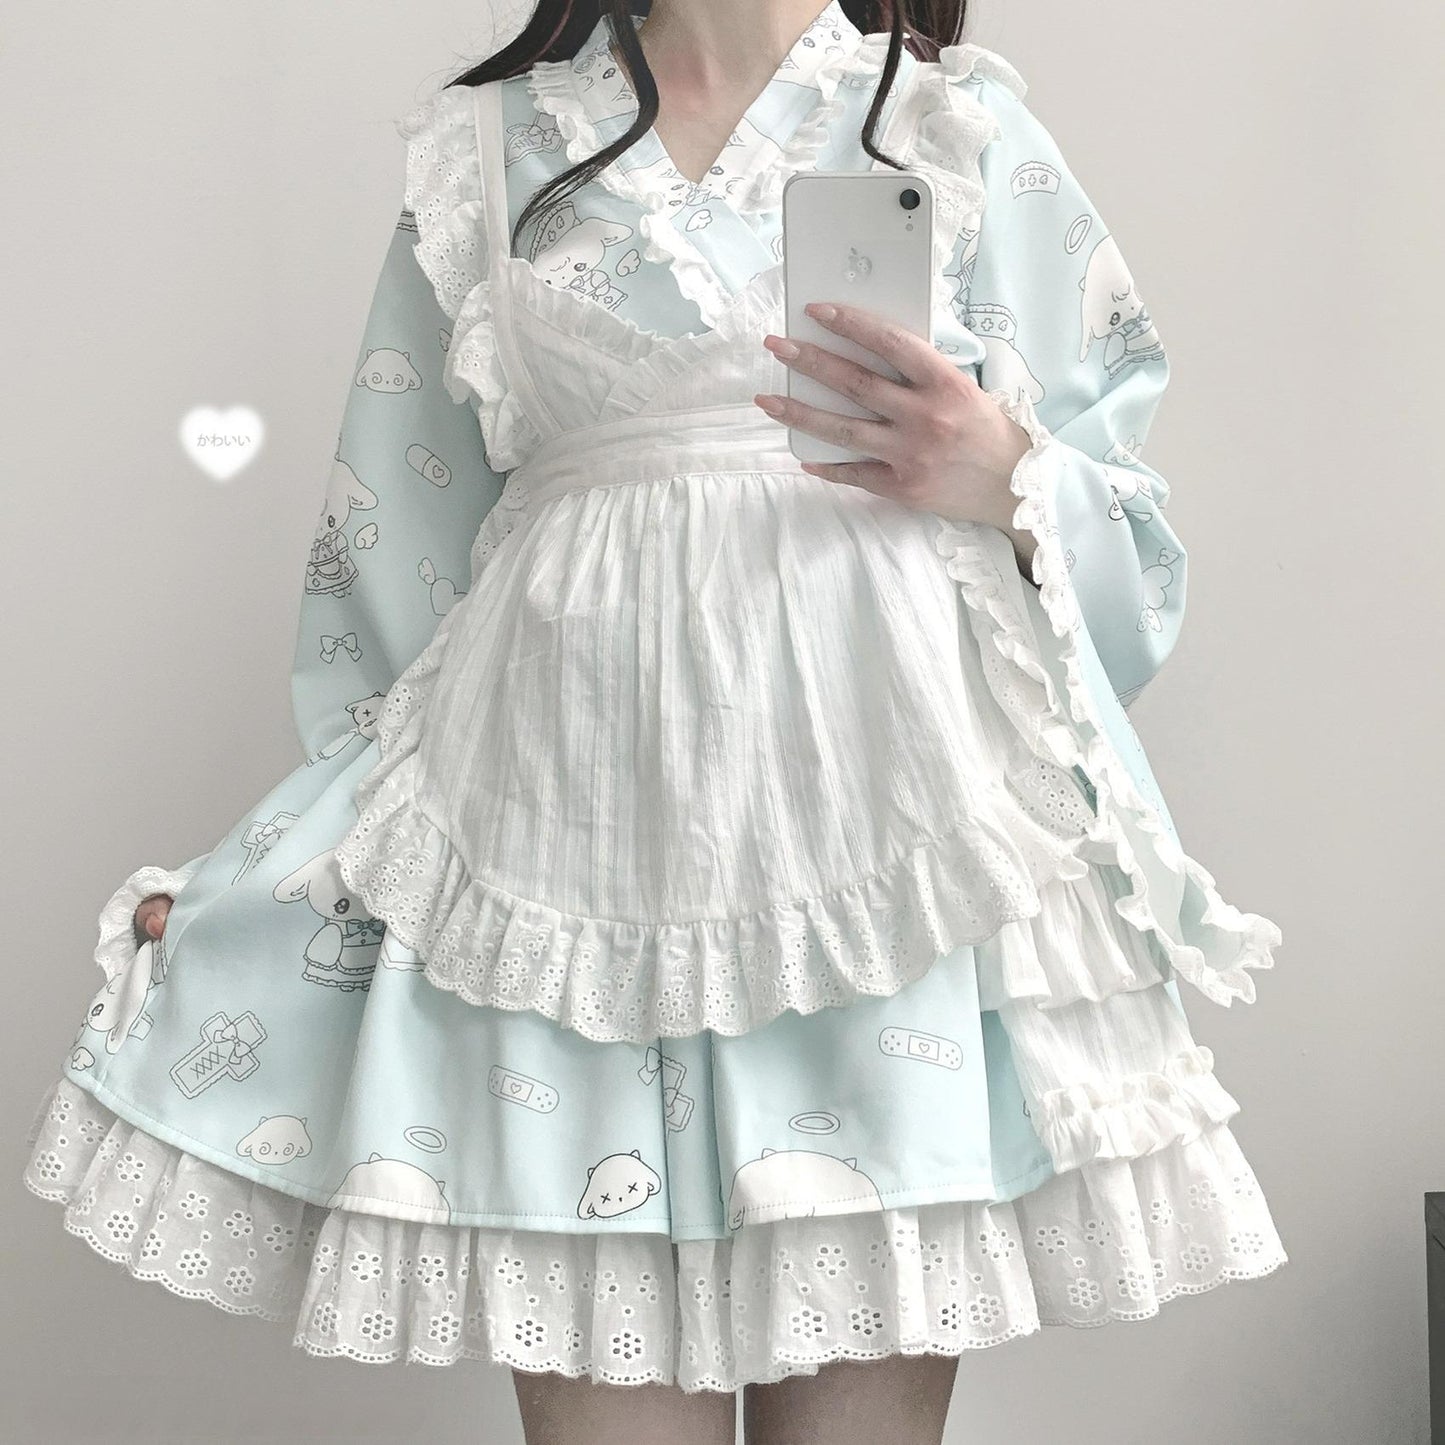 Tenshi Kaiwai Patchwork Skirt Kimono Top White Apron Three-Piece Set 36786:536956